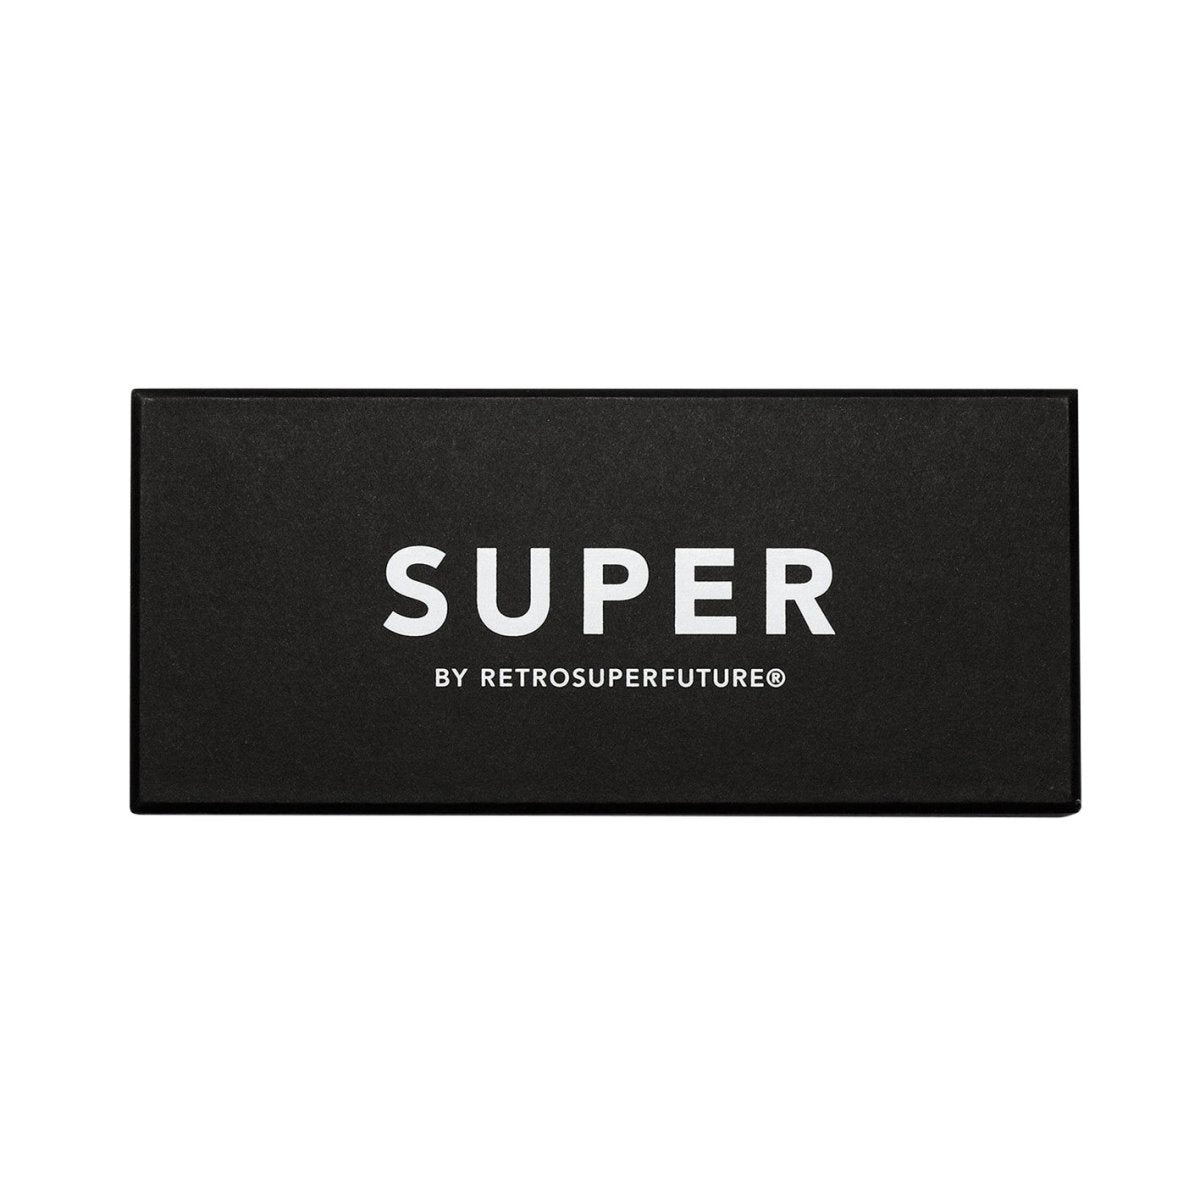 Super by Retrosuperfuture Aalto Monochrome (Fade)  - Allike Store